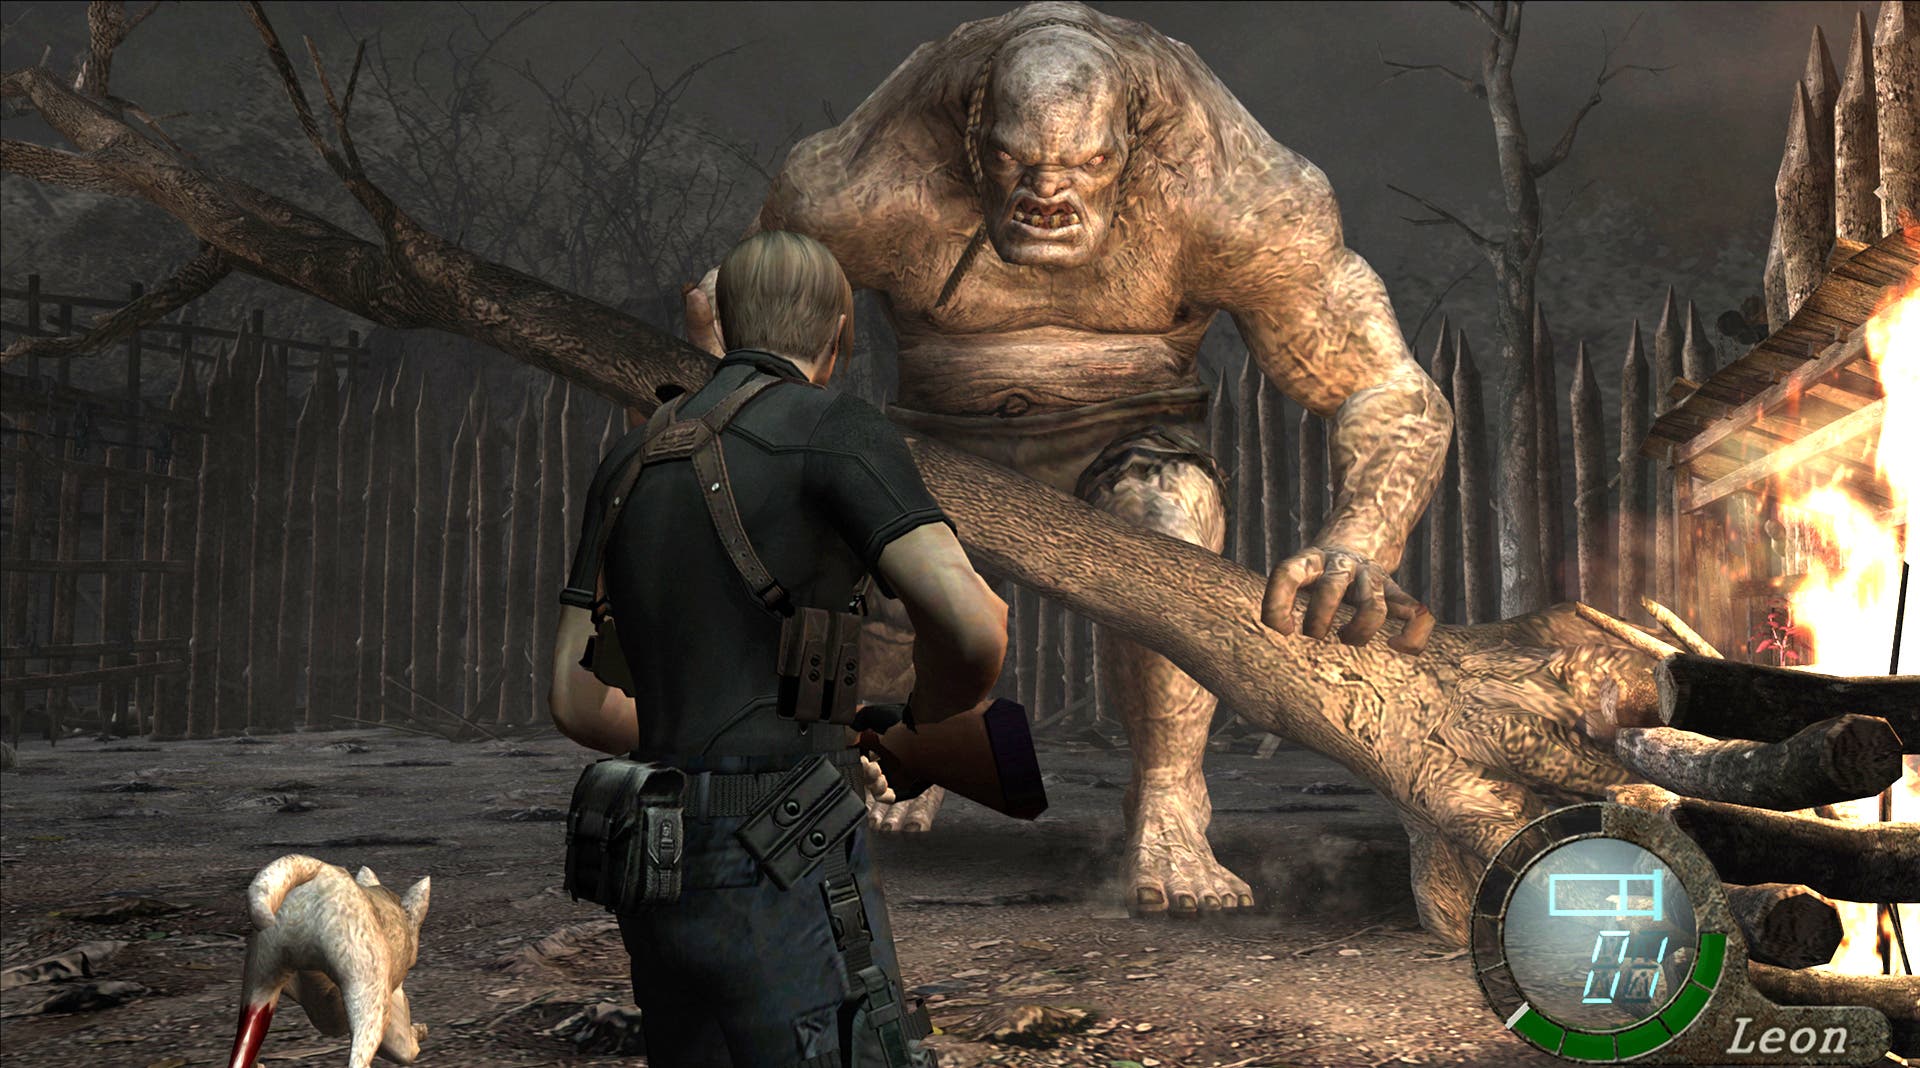 Resident Evil 4 (2005) on Steam